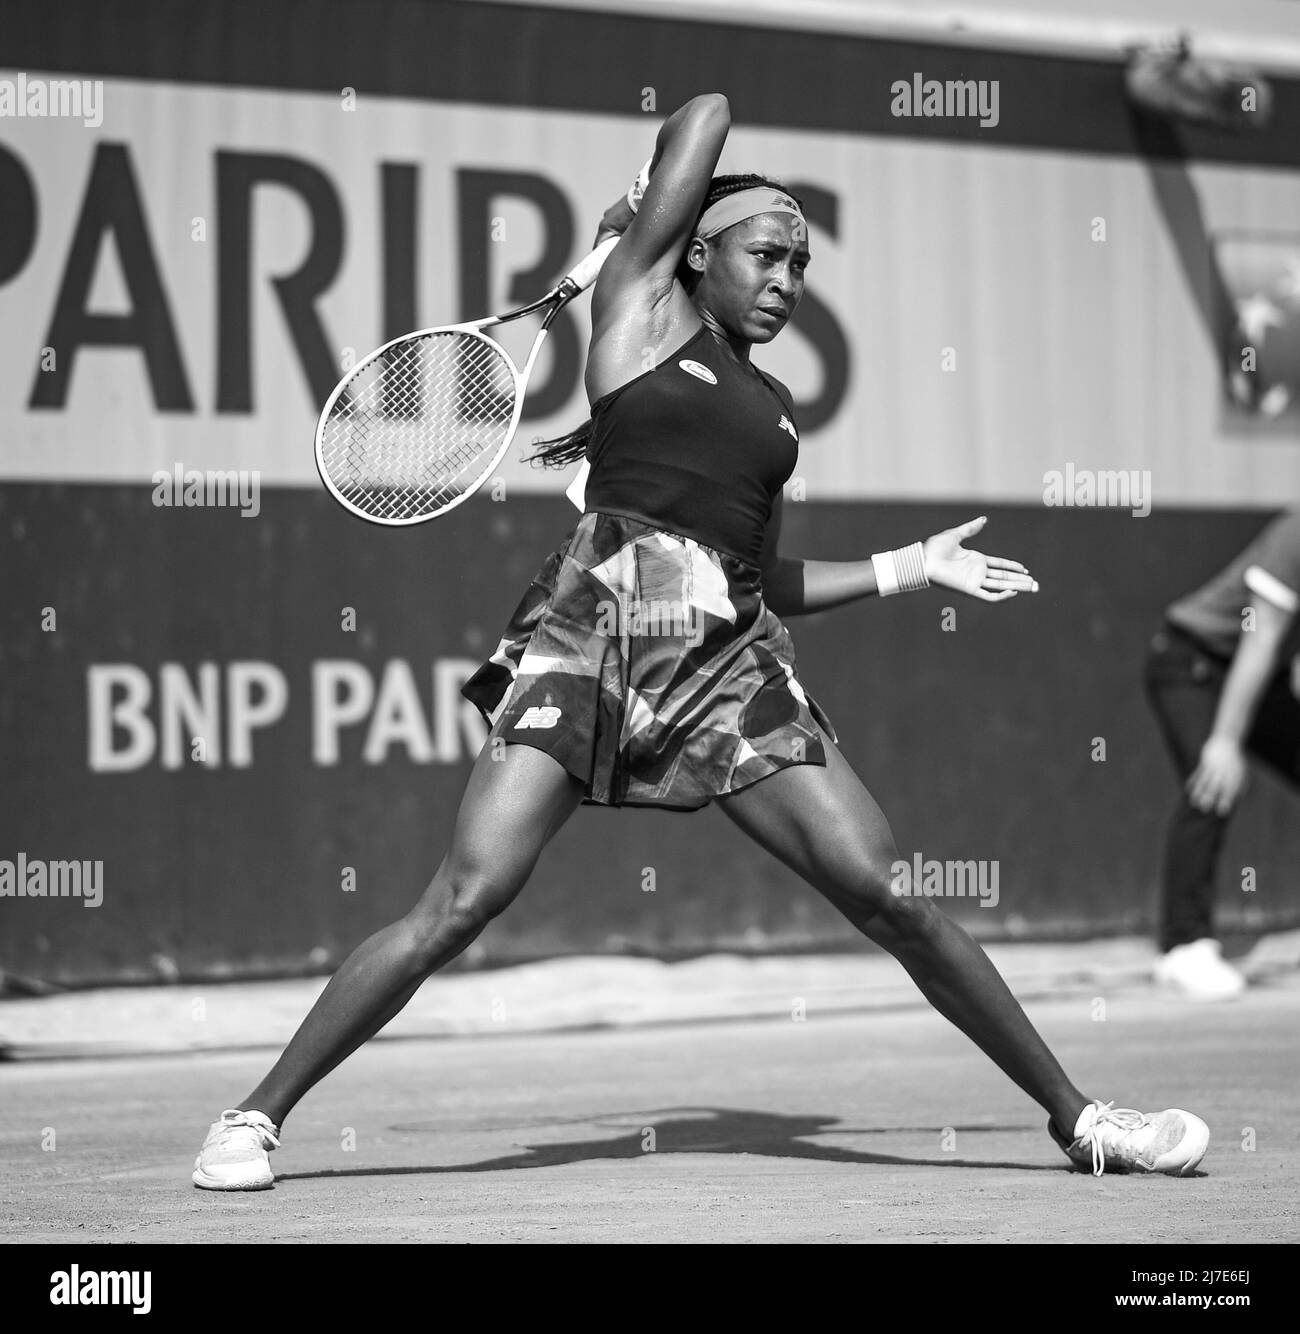 Cori Coco Gauff lors de la deuxième partie à Roland-Garros (Open de France), tournoi de tennis Grand Chelem le 3 juin 2021 au stade Roland-Garros à Paris Banque D'Images